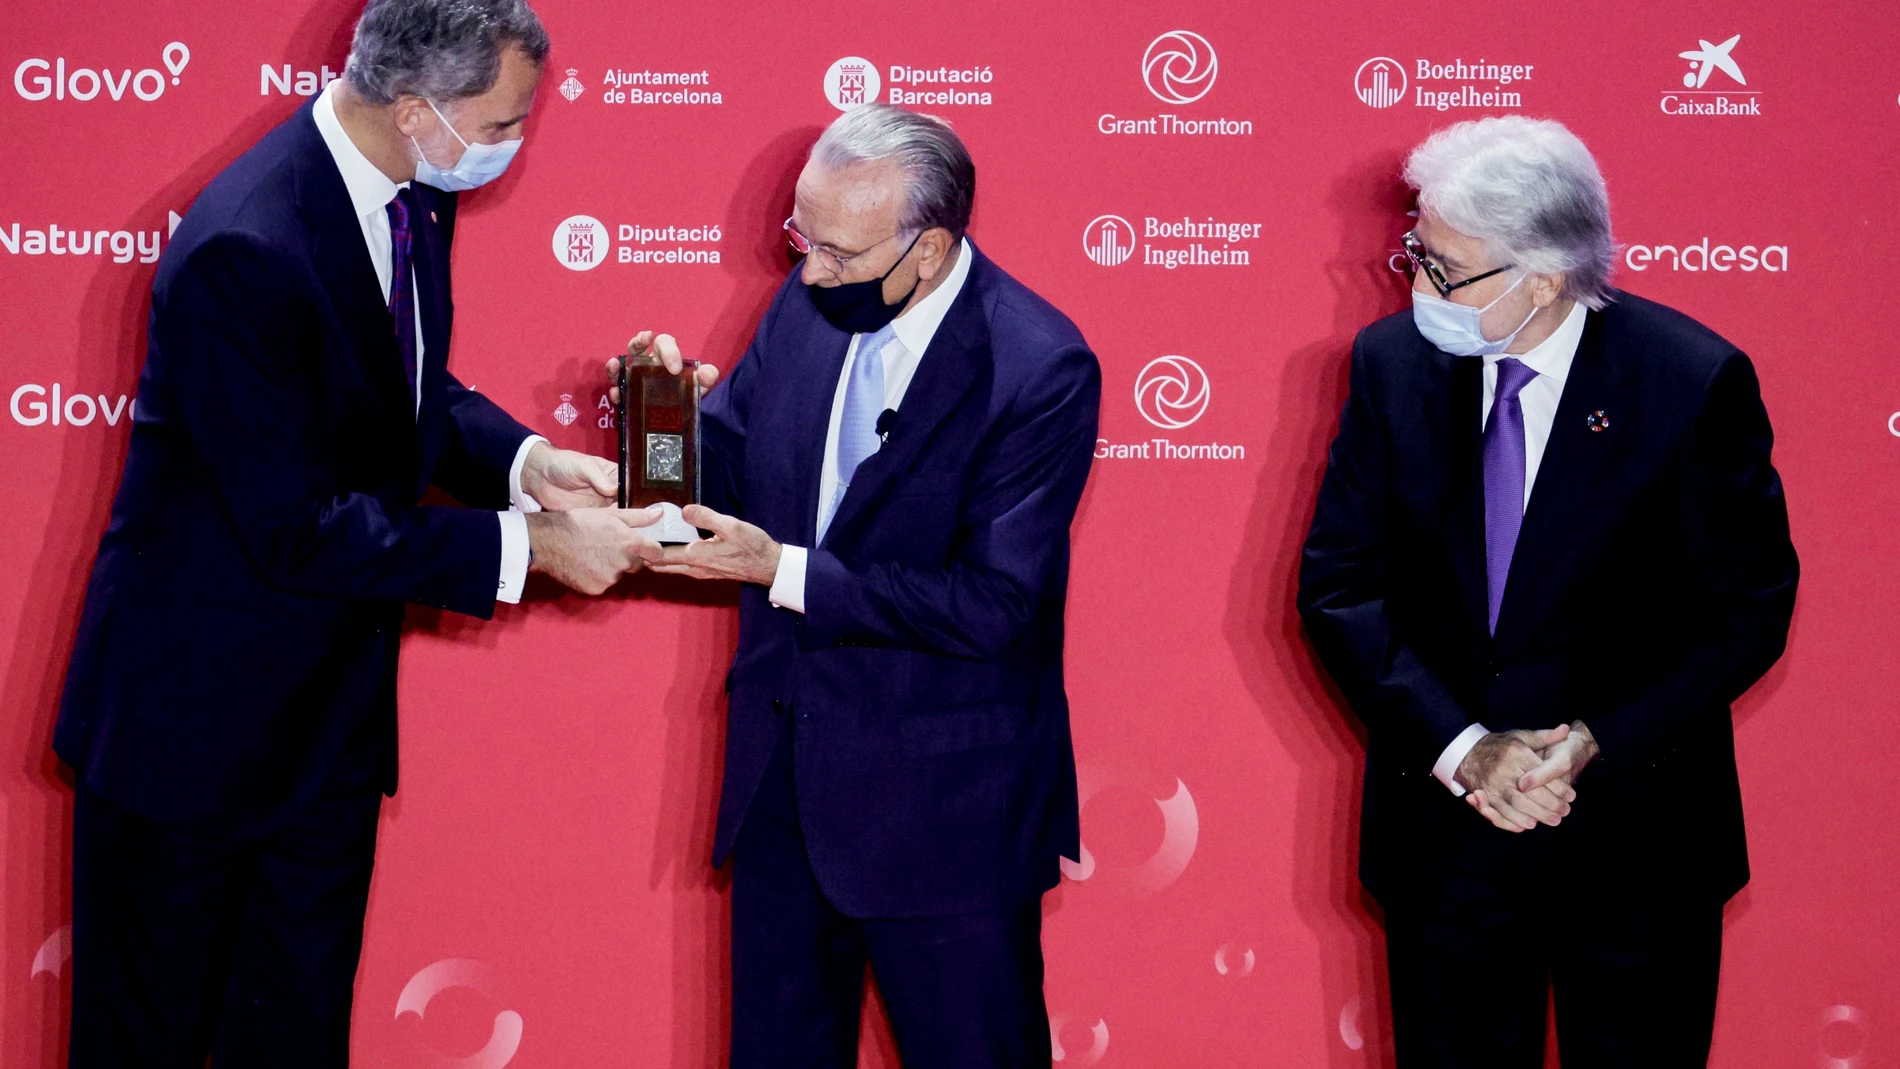 El rey Felipe VI entrega el Premio Carles Ferrer Salat al presidente de la Fundación La Caixa Isidré Fainé, en presencia del Presidente de Fomento Josep Sánchez Llibre